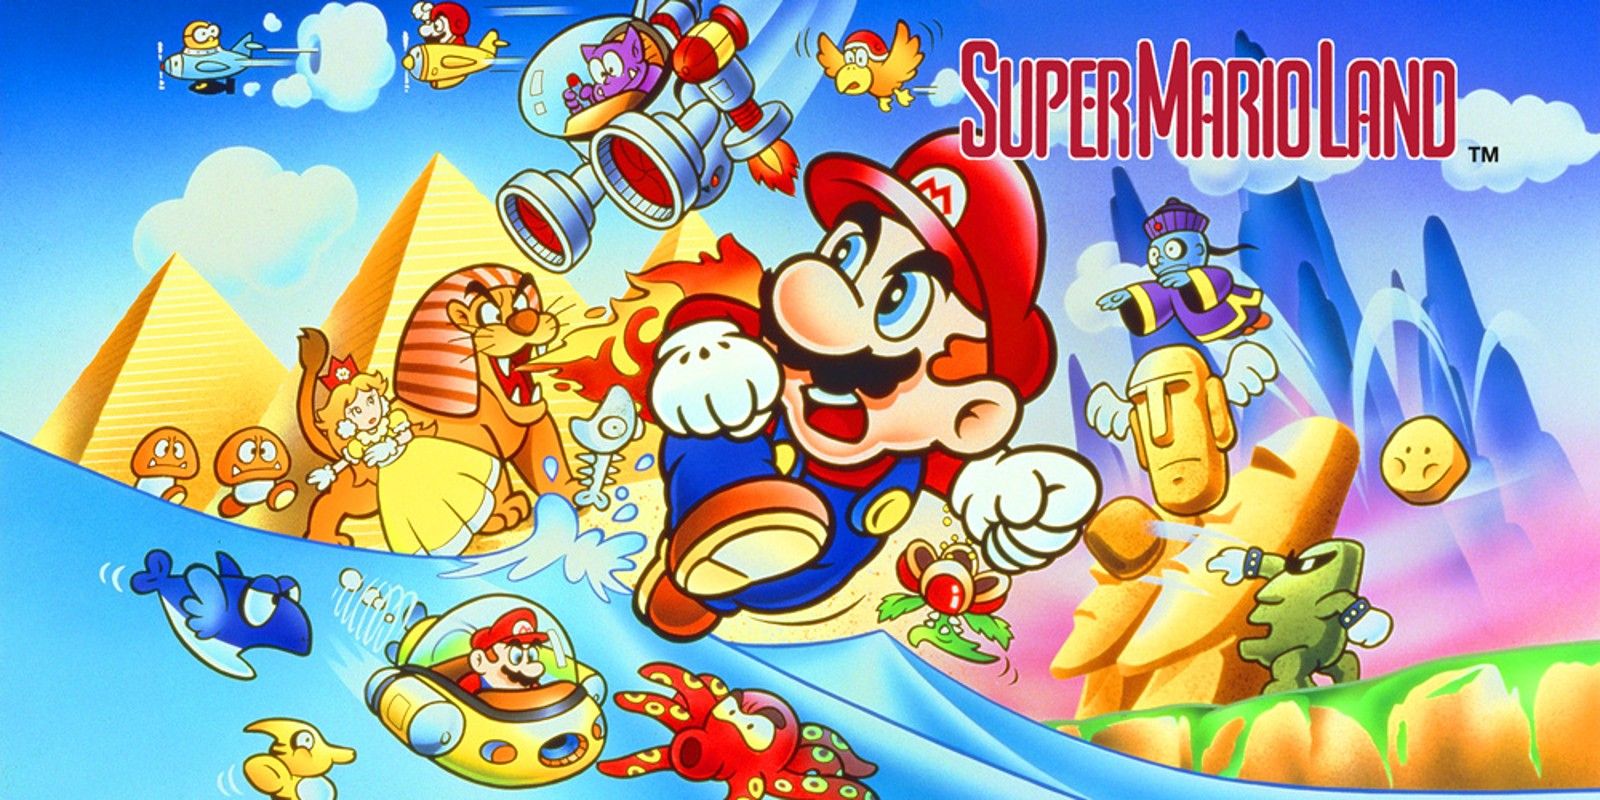 Arte para Super Mario Land no Game Boy.